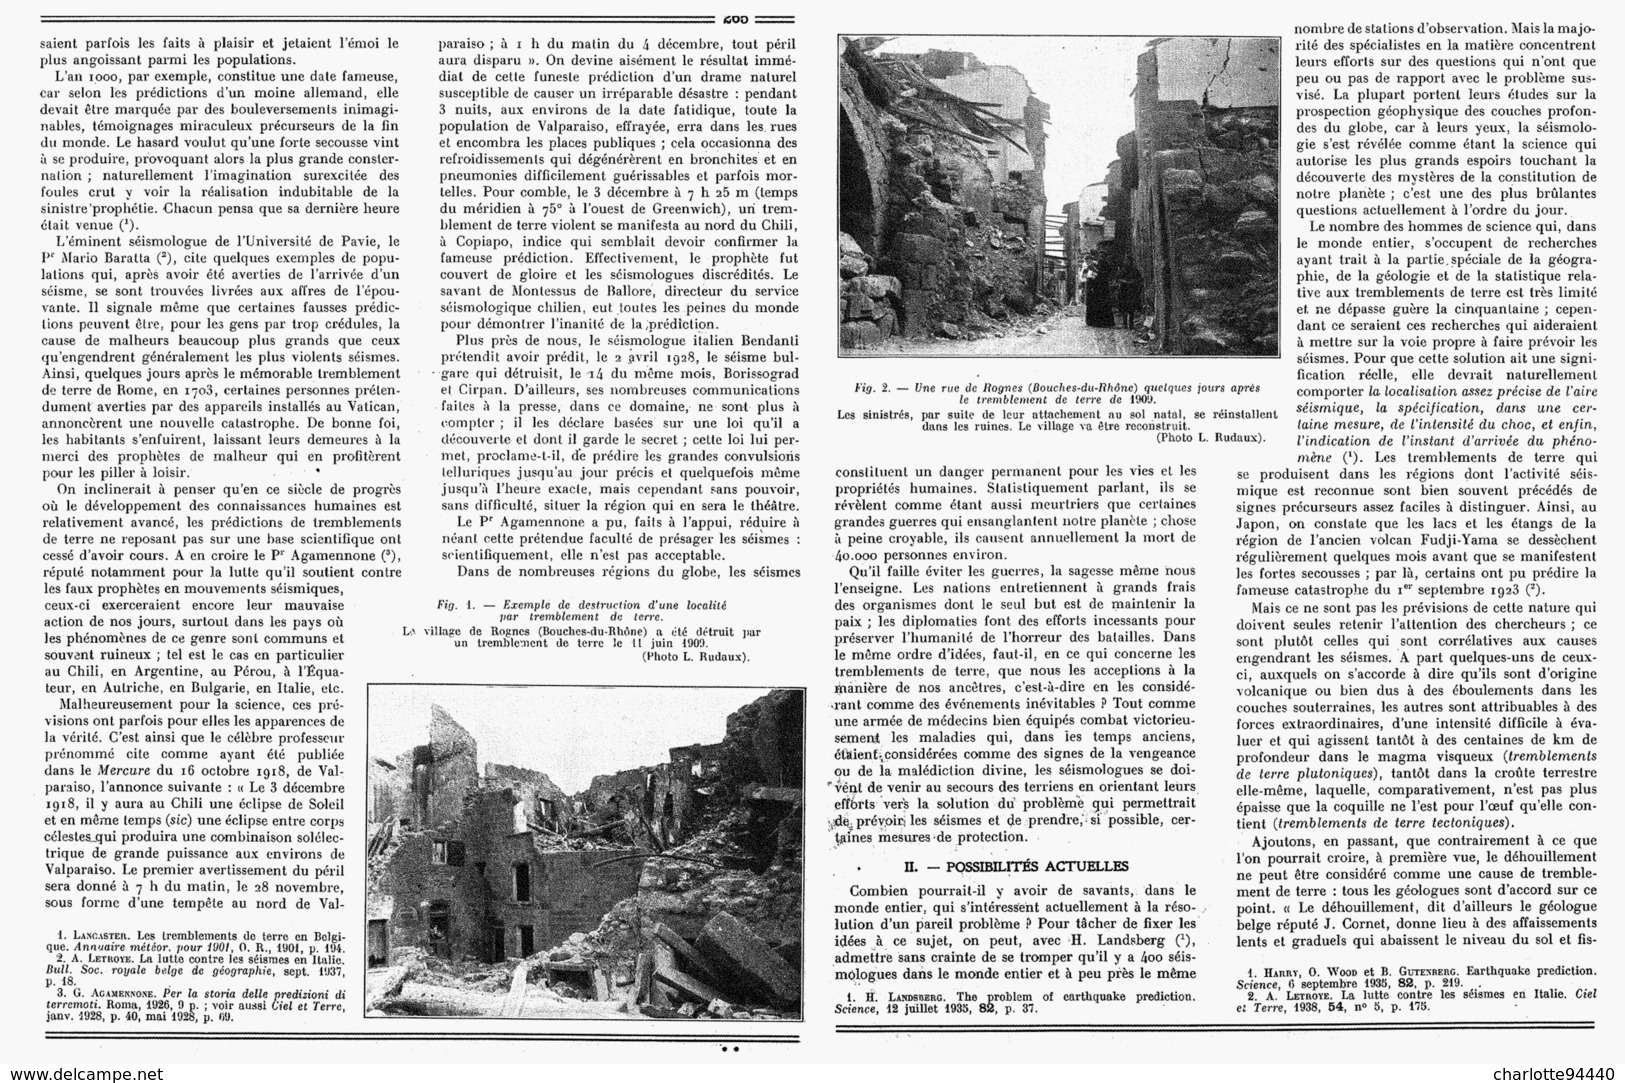 PEUT-ON PREVOIR Les TREMBLEMENTS De TERRE  Le VILLAGE De " ROGNES (Bouches-du-Rhône)"  Detruit Le  11 JUIN 1909 "  1939 - Côte D'Azur